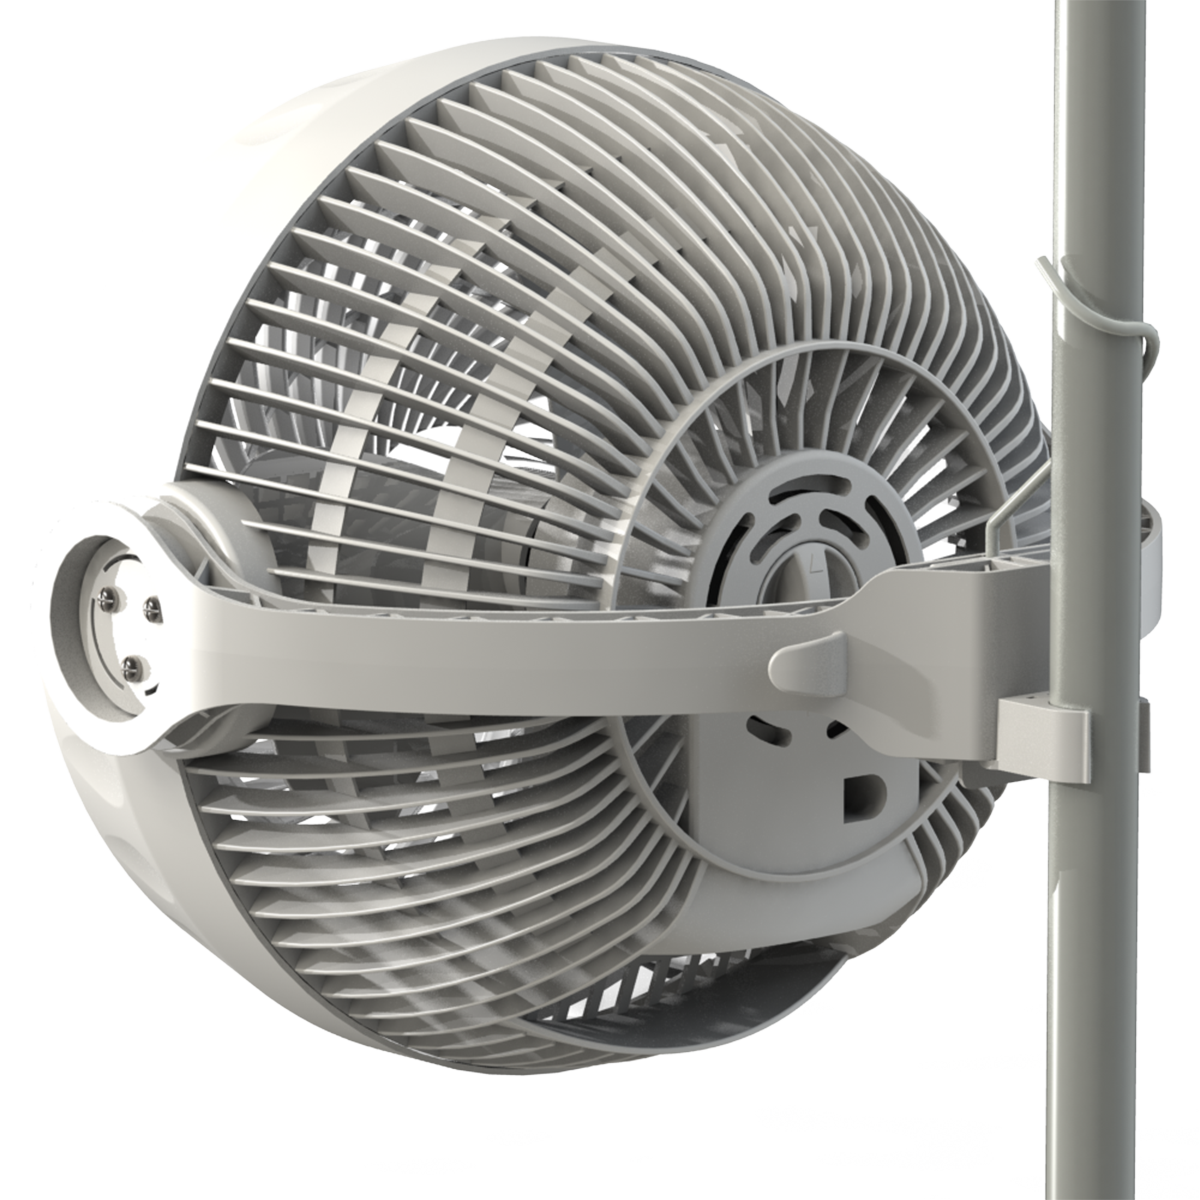 Вентилятор бытовой купить. Вентилятор Monkey Fan 30 Вт. Вентилятор Secret Jardin Monkey Fan 30. Вентилятор Monkey Fan 16 w. Вентилятор Monkey Fan, 16 w (двухскоростной.